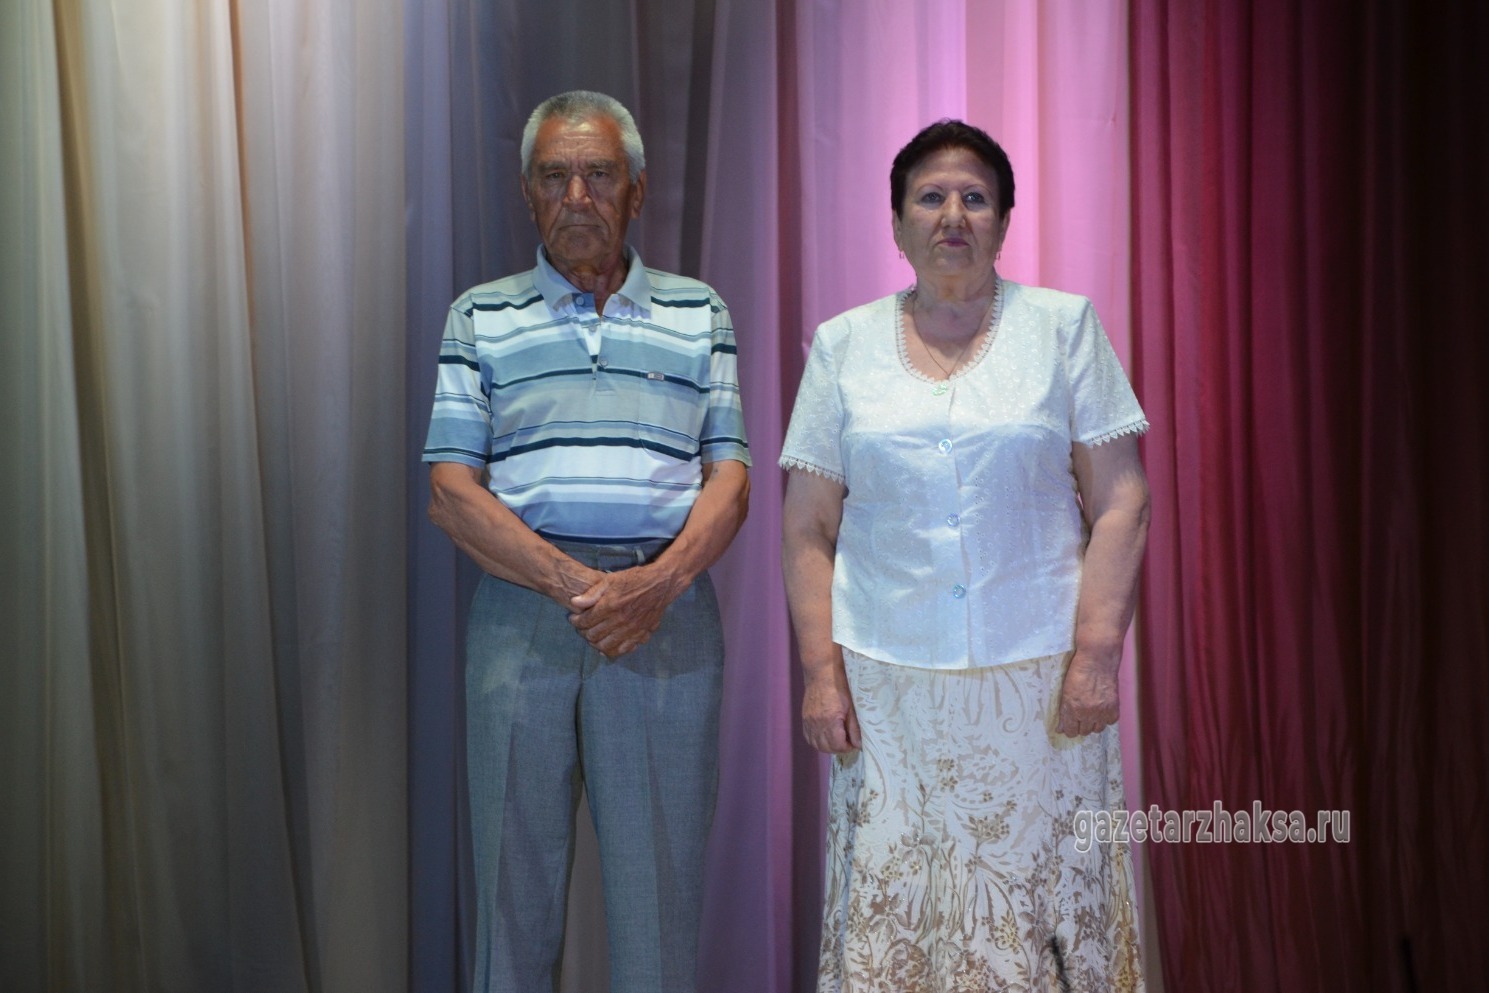 Стаж семейной жизни супругов Волковых 45 лет